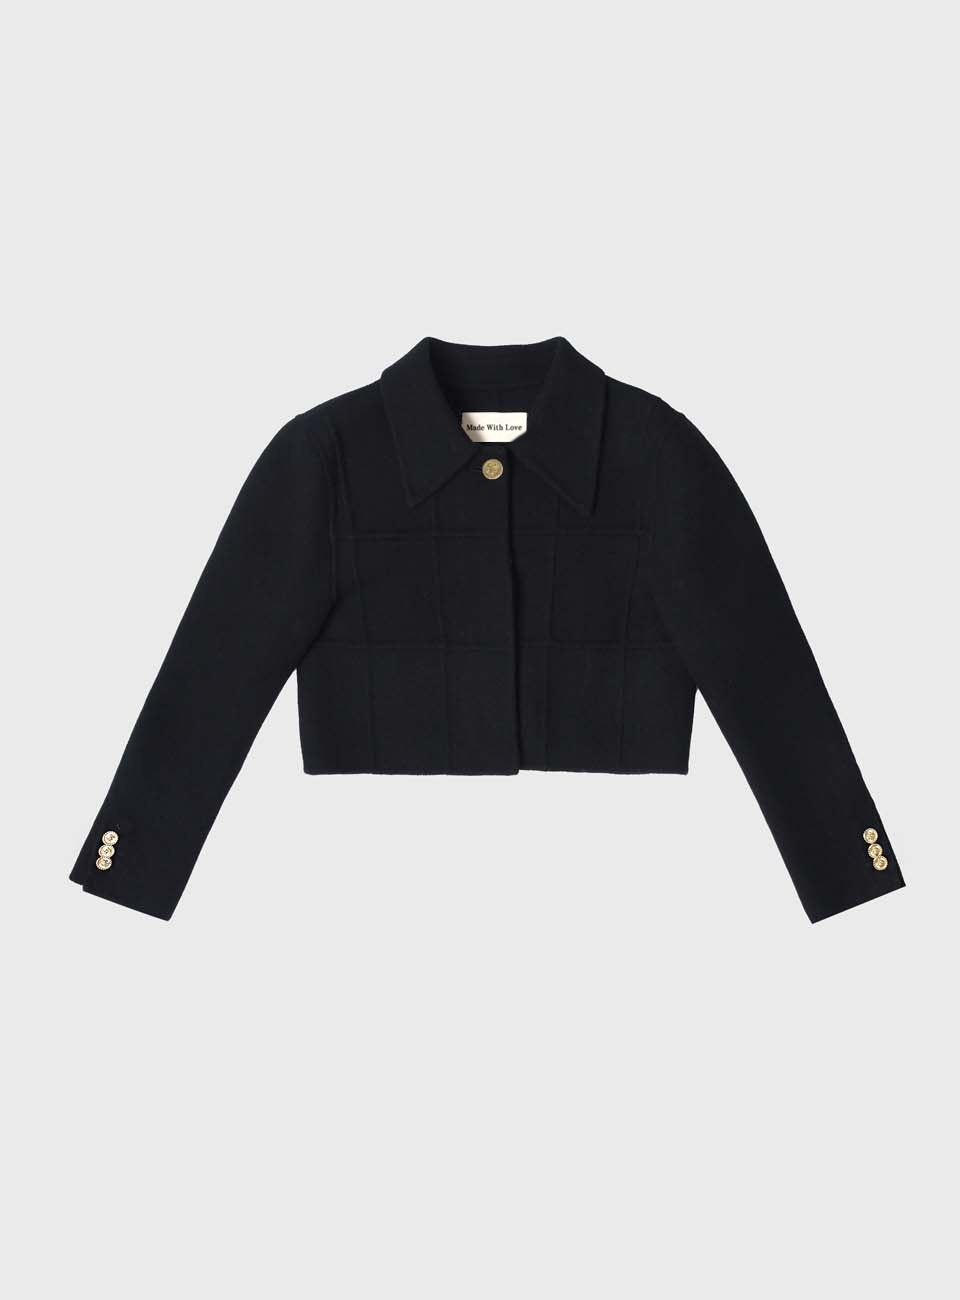 Kate Tweed Wool Jacket (Black)